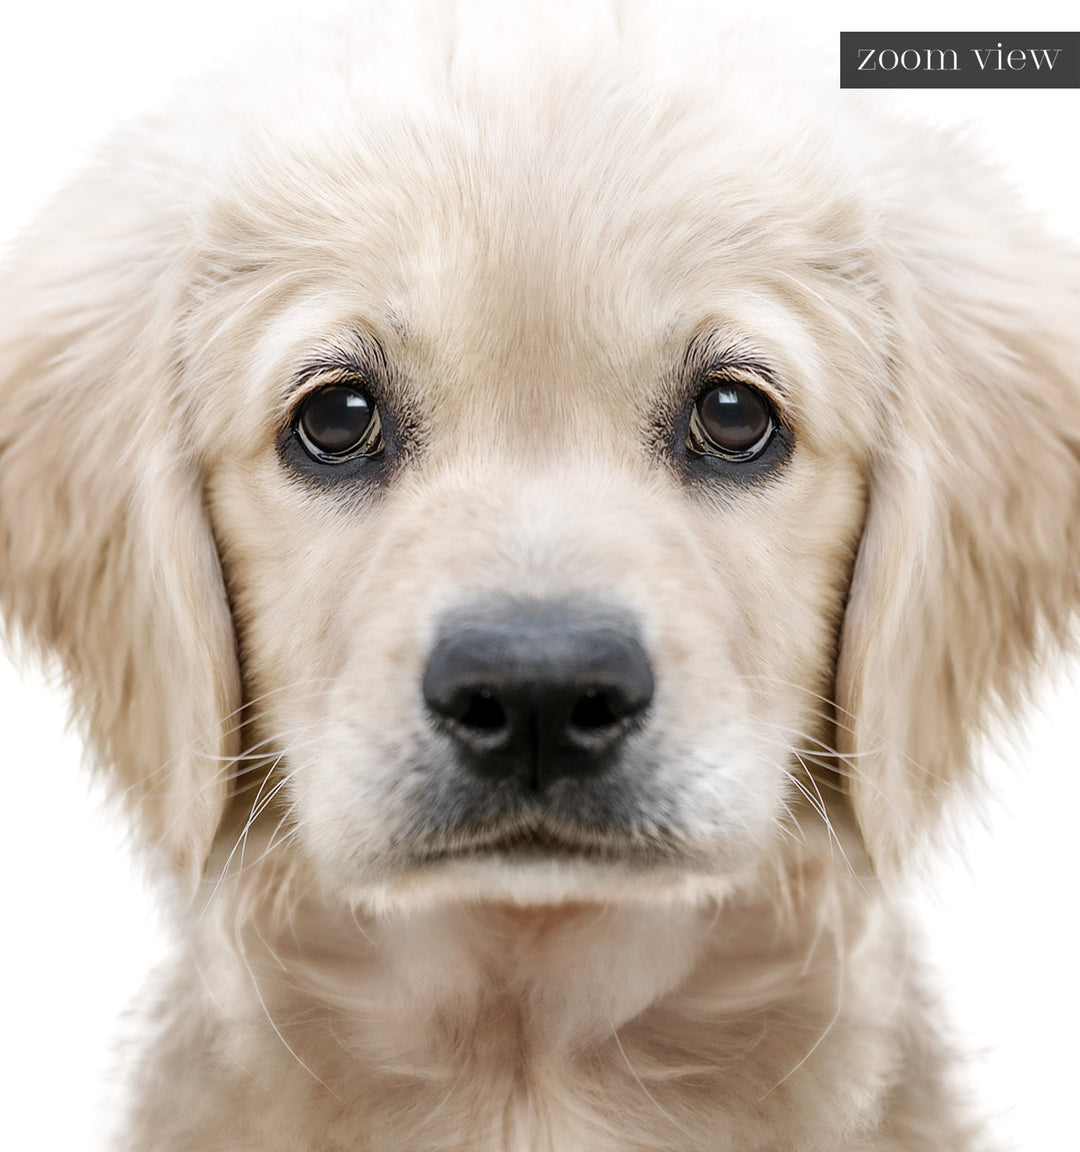 Baby Puppy Golden Retriever Portrait